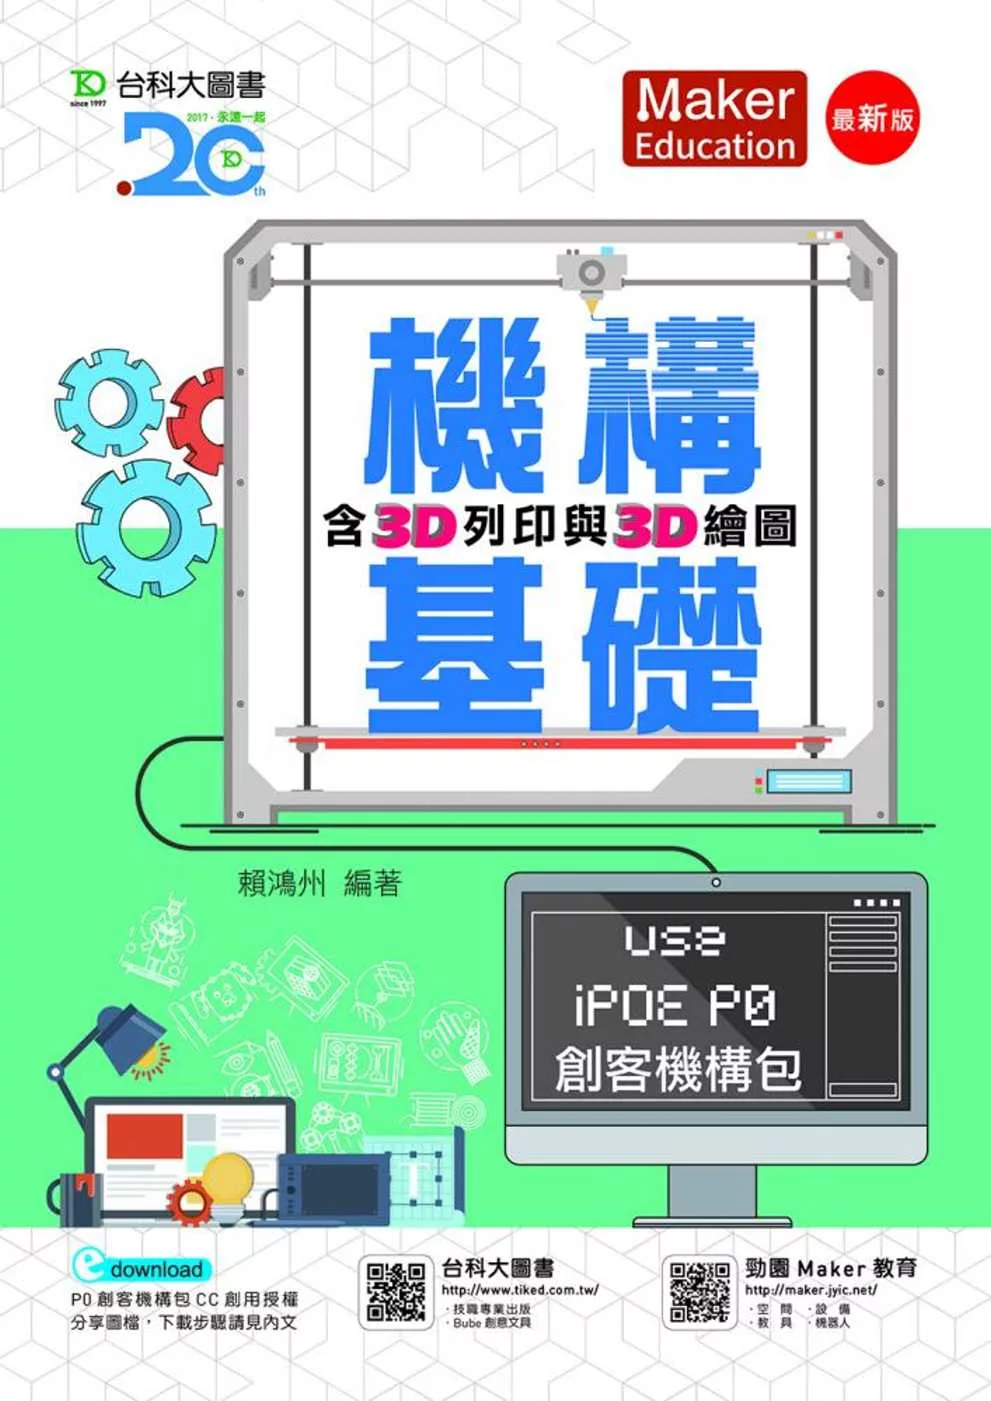 機構基礎含3D列印與3D繪圖 Use iPOE P0創客機構包(最新版)